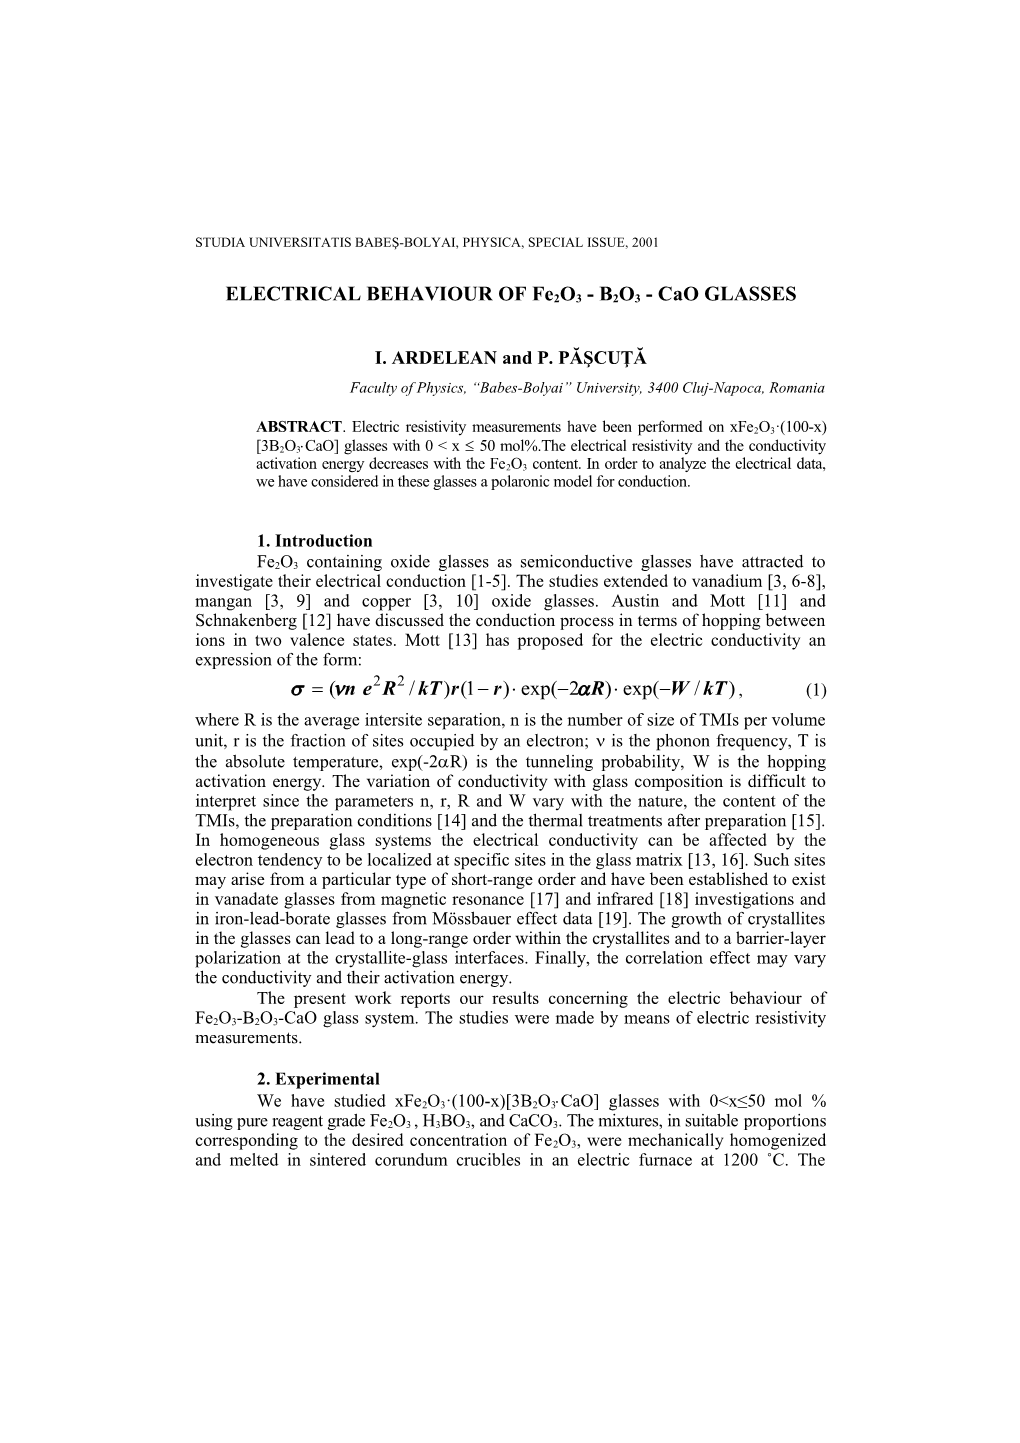 ELECTRICAL BEHAVIOUR of Fe2o3 - B2O3 - Cao GLASSES